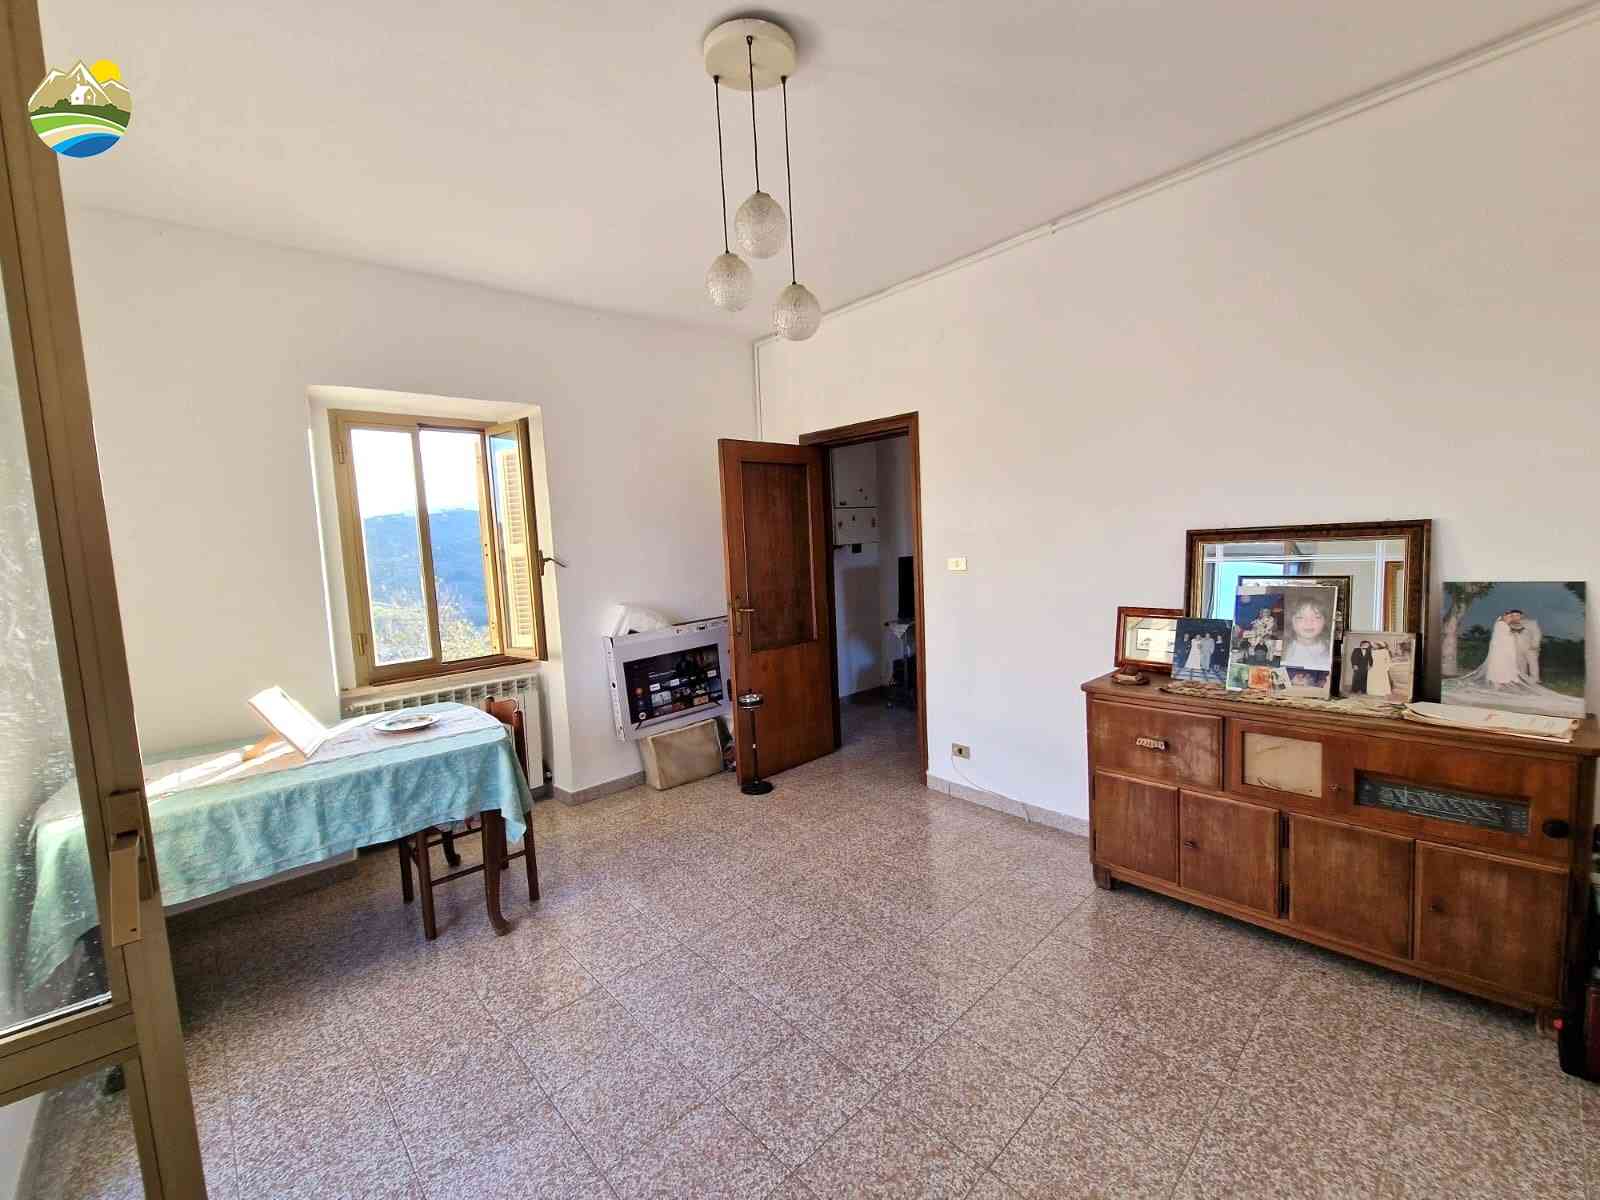 Casa di campagna Casa di campagna in vendita Cellino Attanasio (TE), Tenuta Vallerossa - Cellino Attanasio - EUR 238.752 660